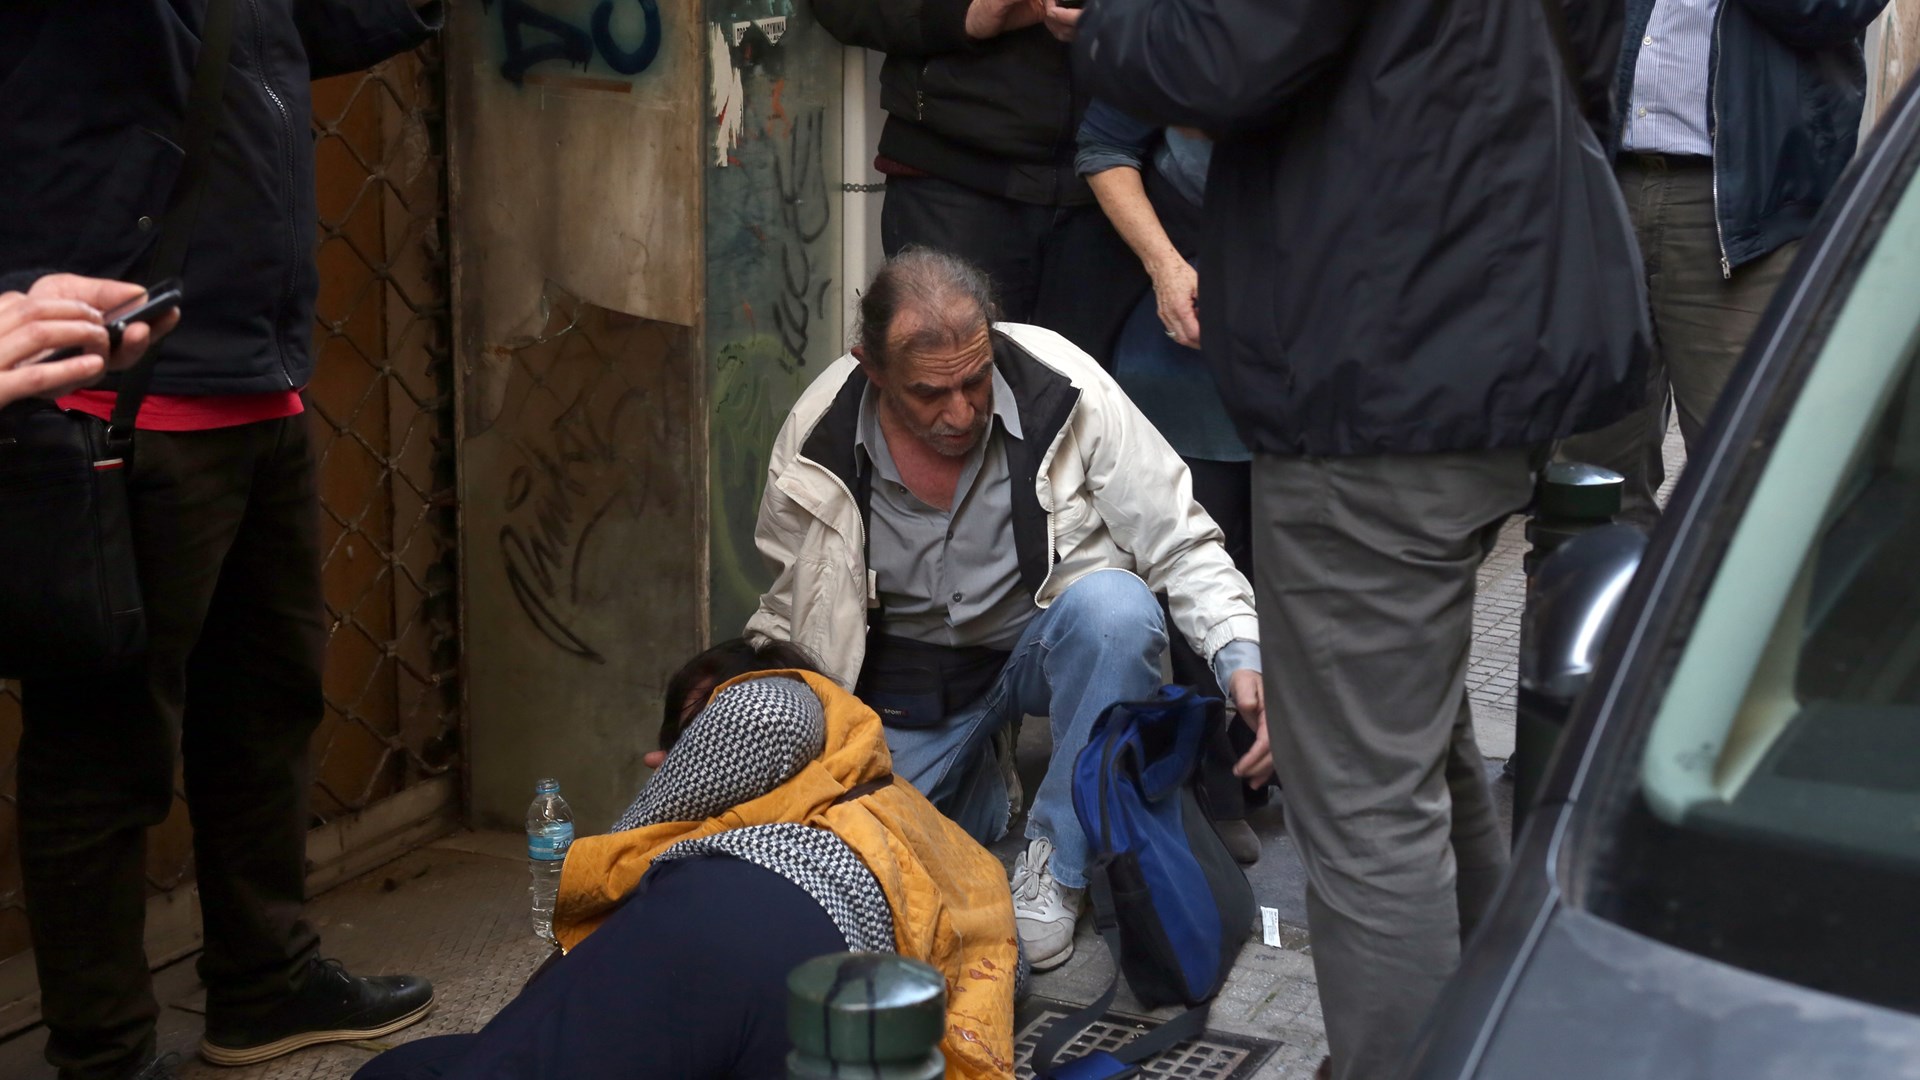 Επεισόδια έξω από συμβολαιογραφείο στο κέντρο της Αθήνας – Τρεις τραυματίες – ΦΩΤΟ